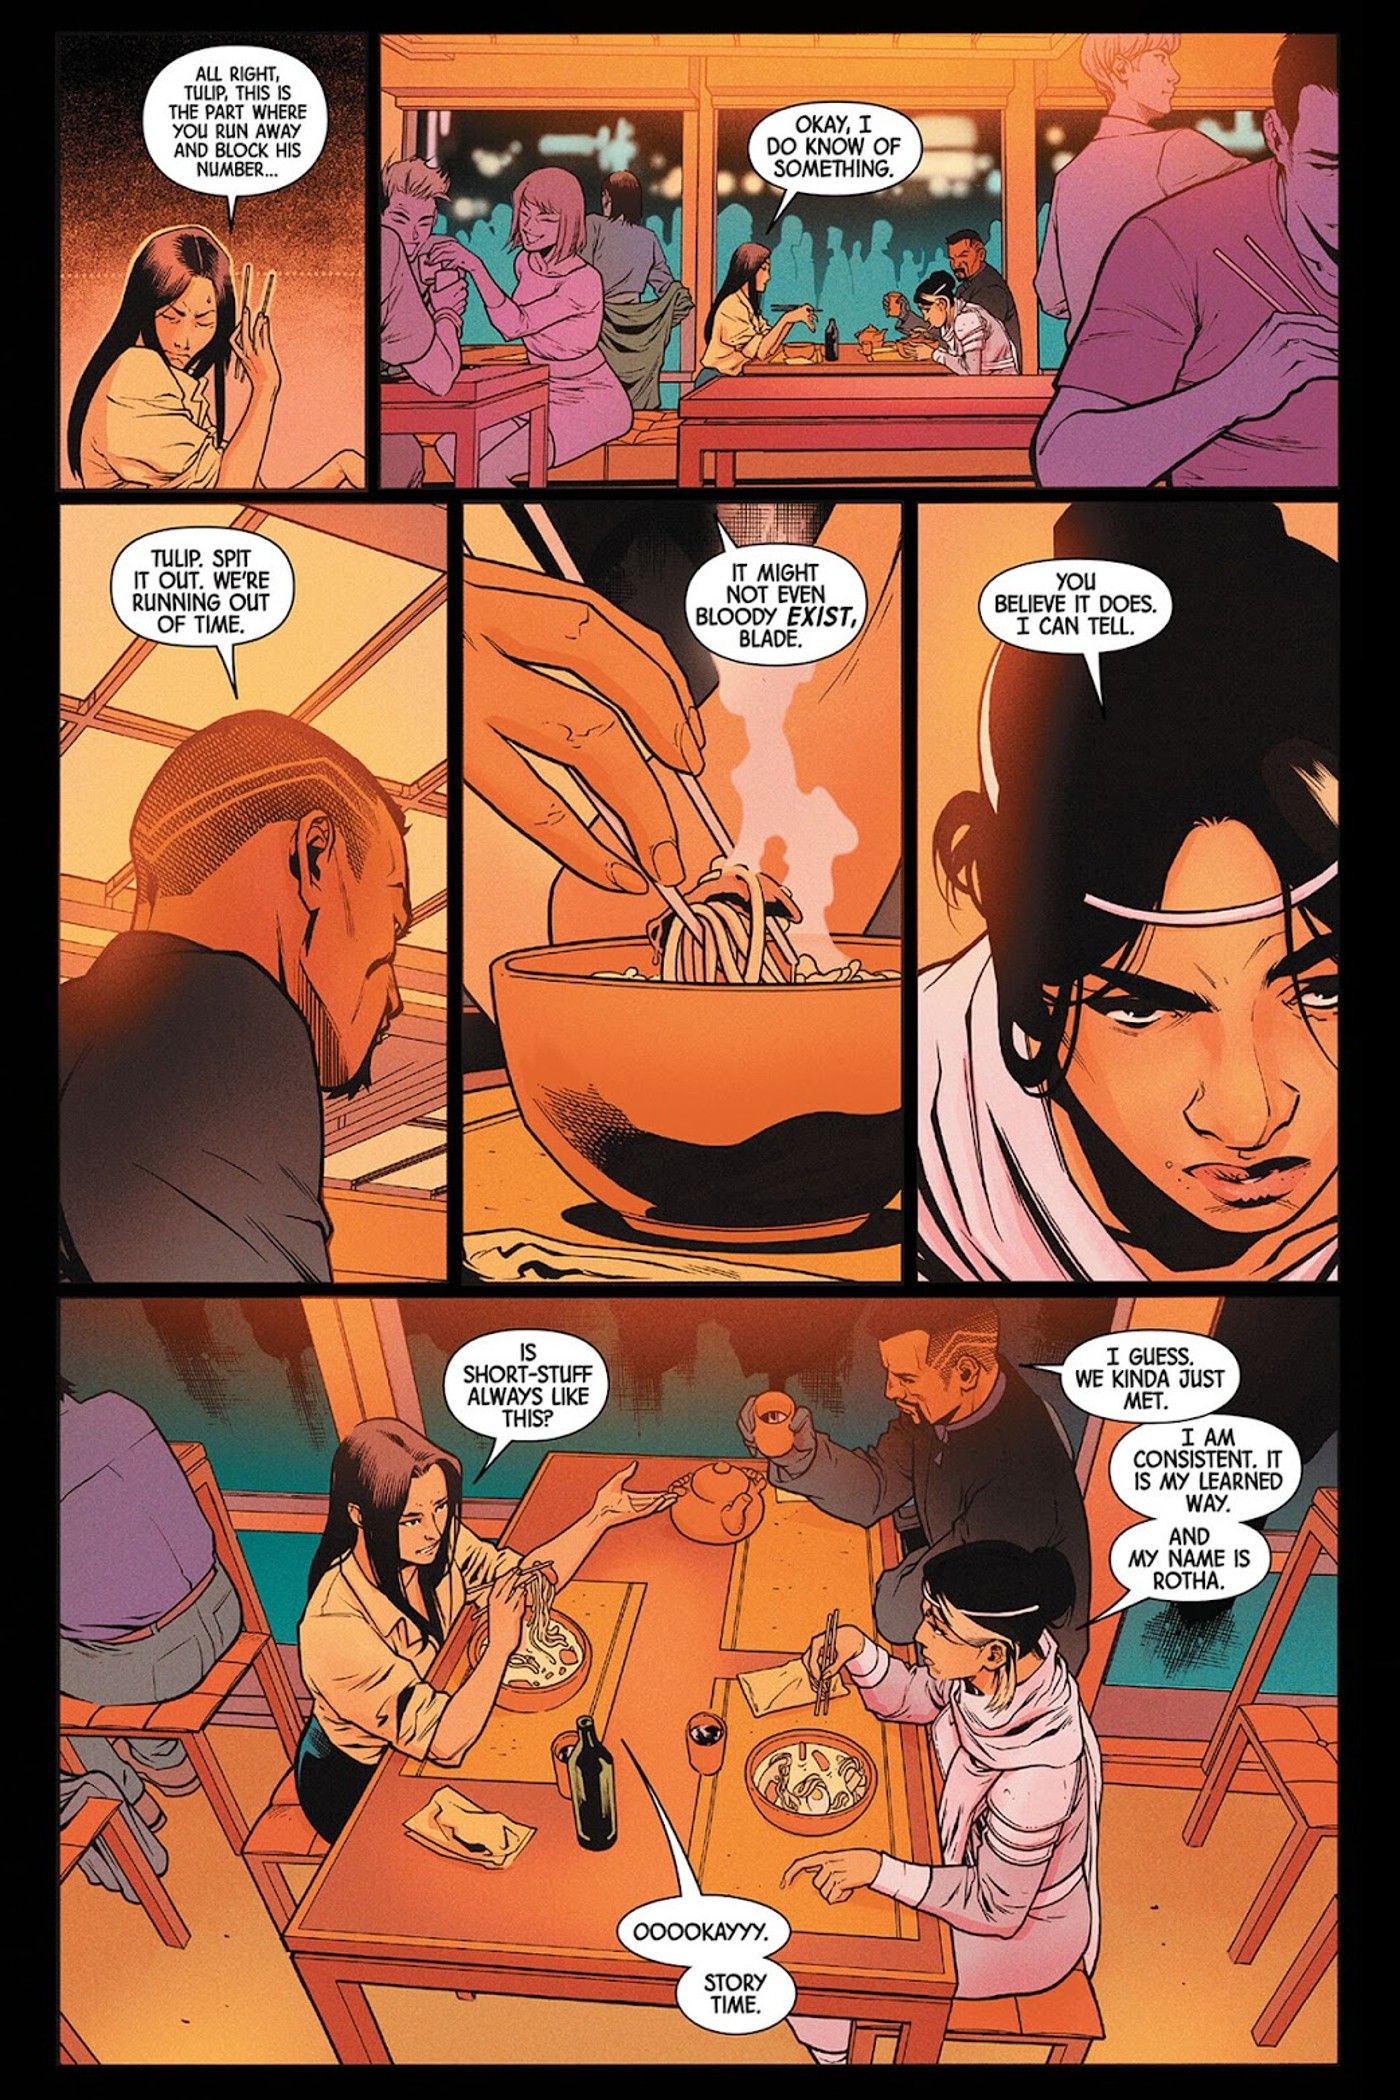 Blade #3'teki panellerde Tulip, Rotha ve Blade'e Lucifer'in Işık Getiren'ini anlatıyor